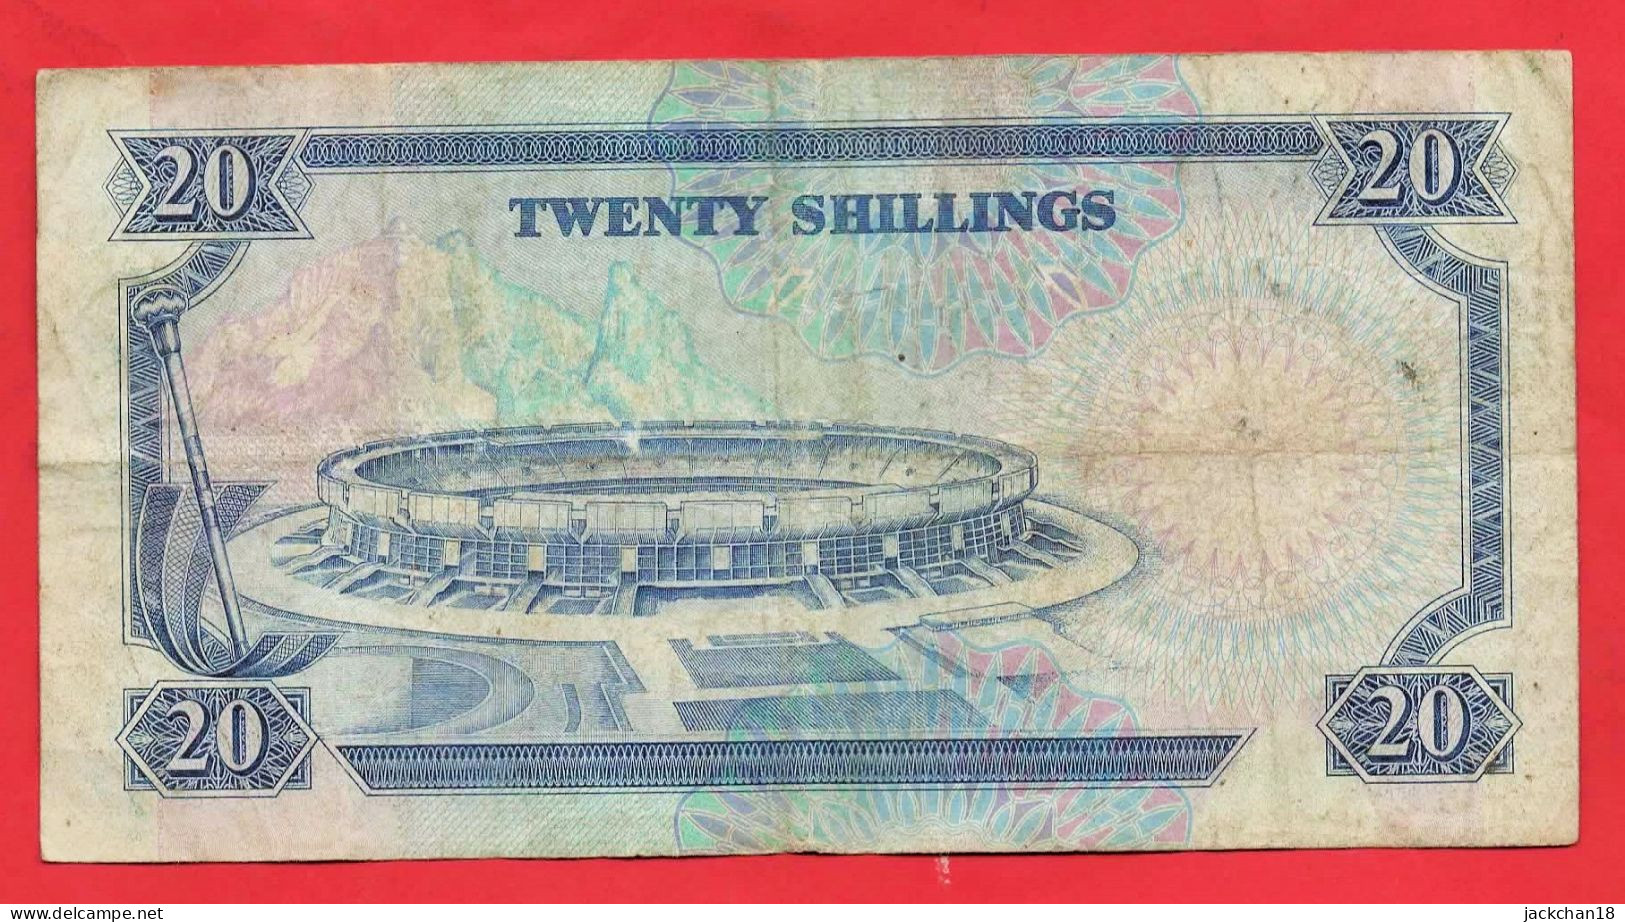 -- 20 SHILINGI ISHIRINI / CENTRAL BANK OF KENYA / Président De La République Du KENYA / 1991 -- - Kenia